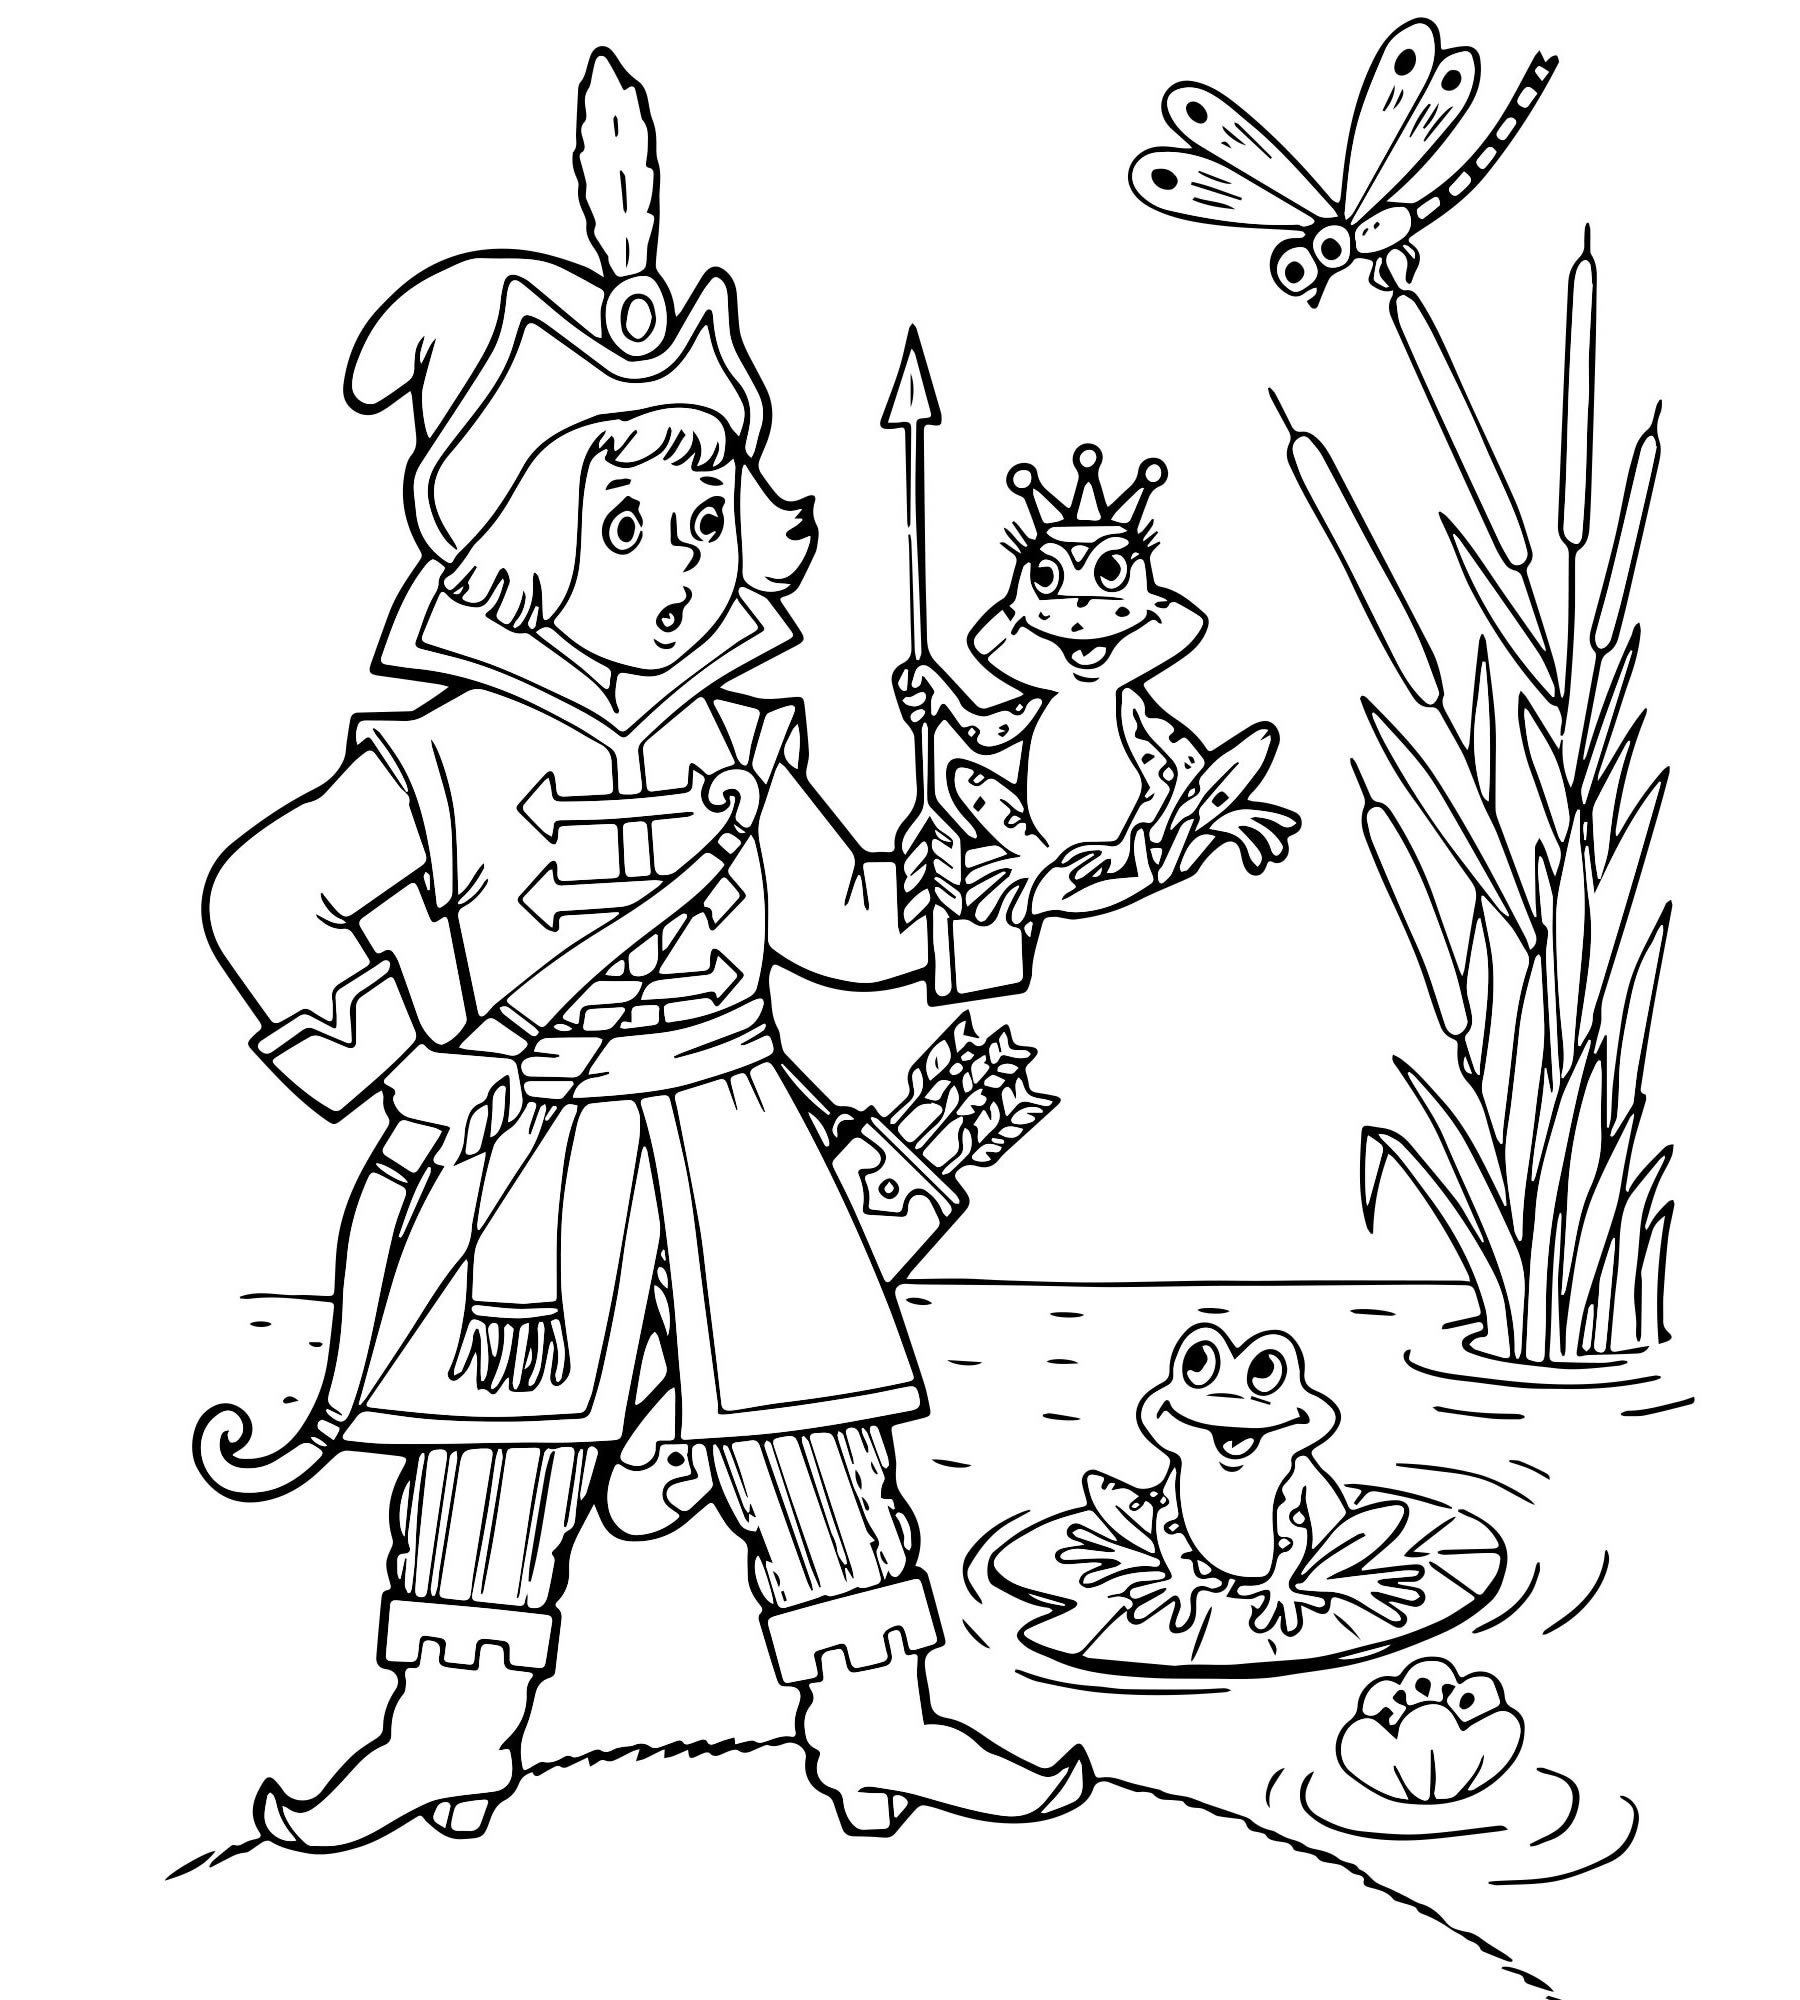 Рисовать сказочных героев. Царевна-лягушка сказка раскраска для детей. Раскраска по сказке Царевна лягушка для детей.